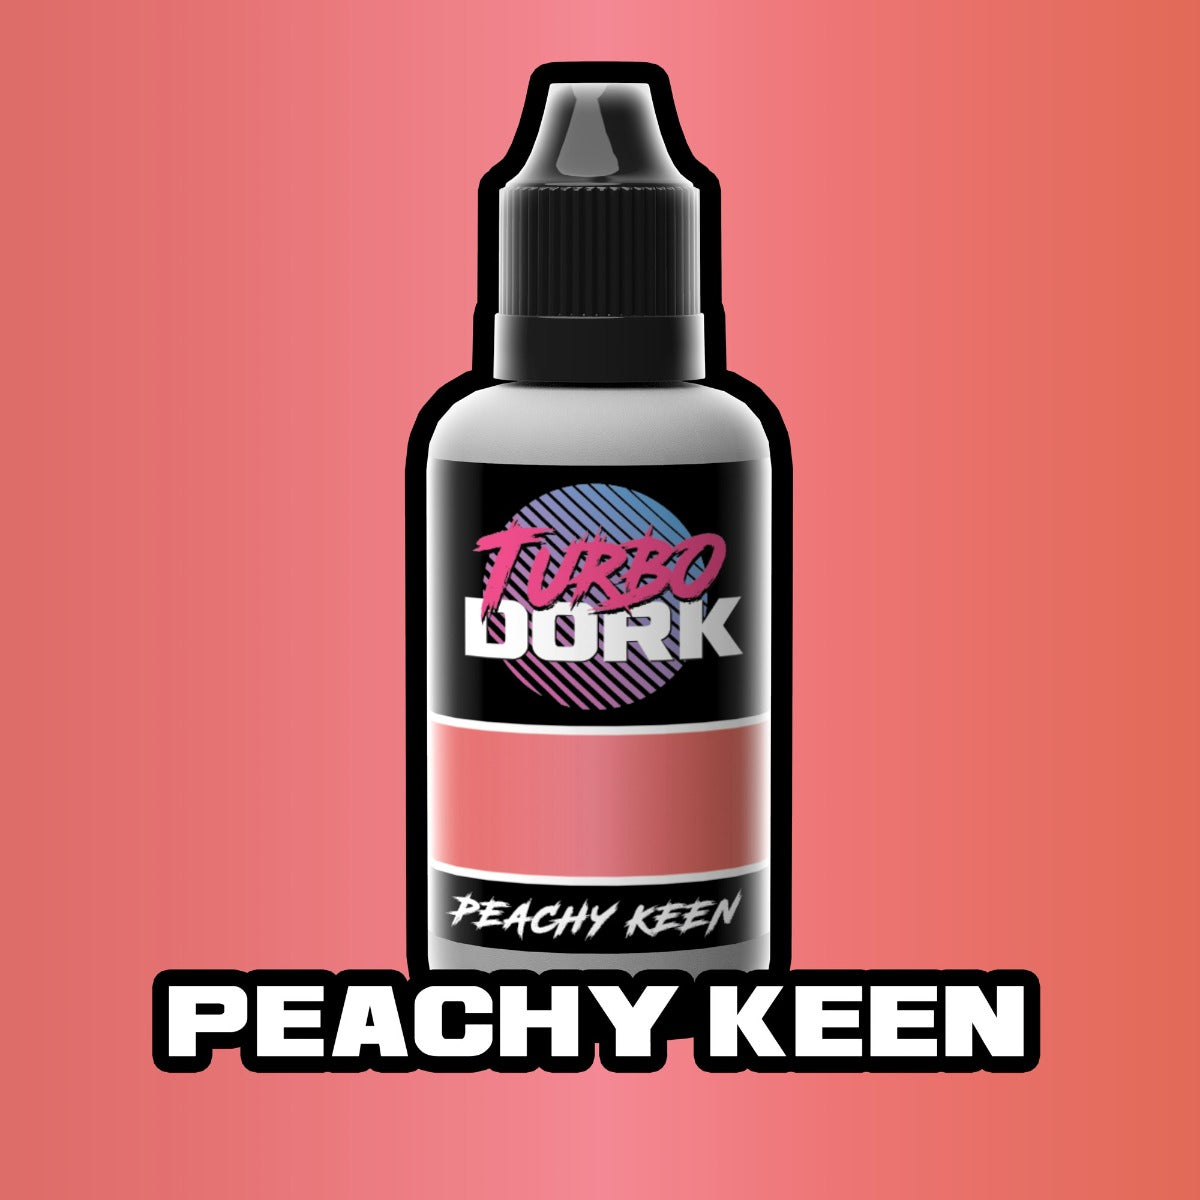 Turbo Dork Peachy Keen Metallic Acrylic Paint 20ml Bottle